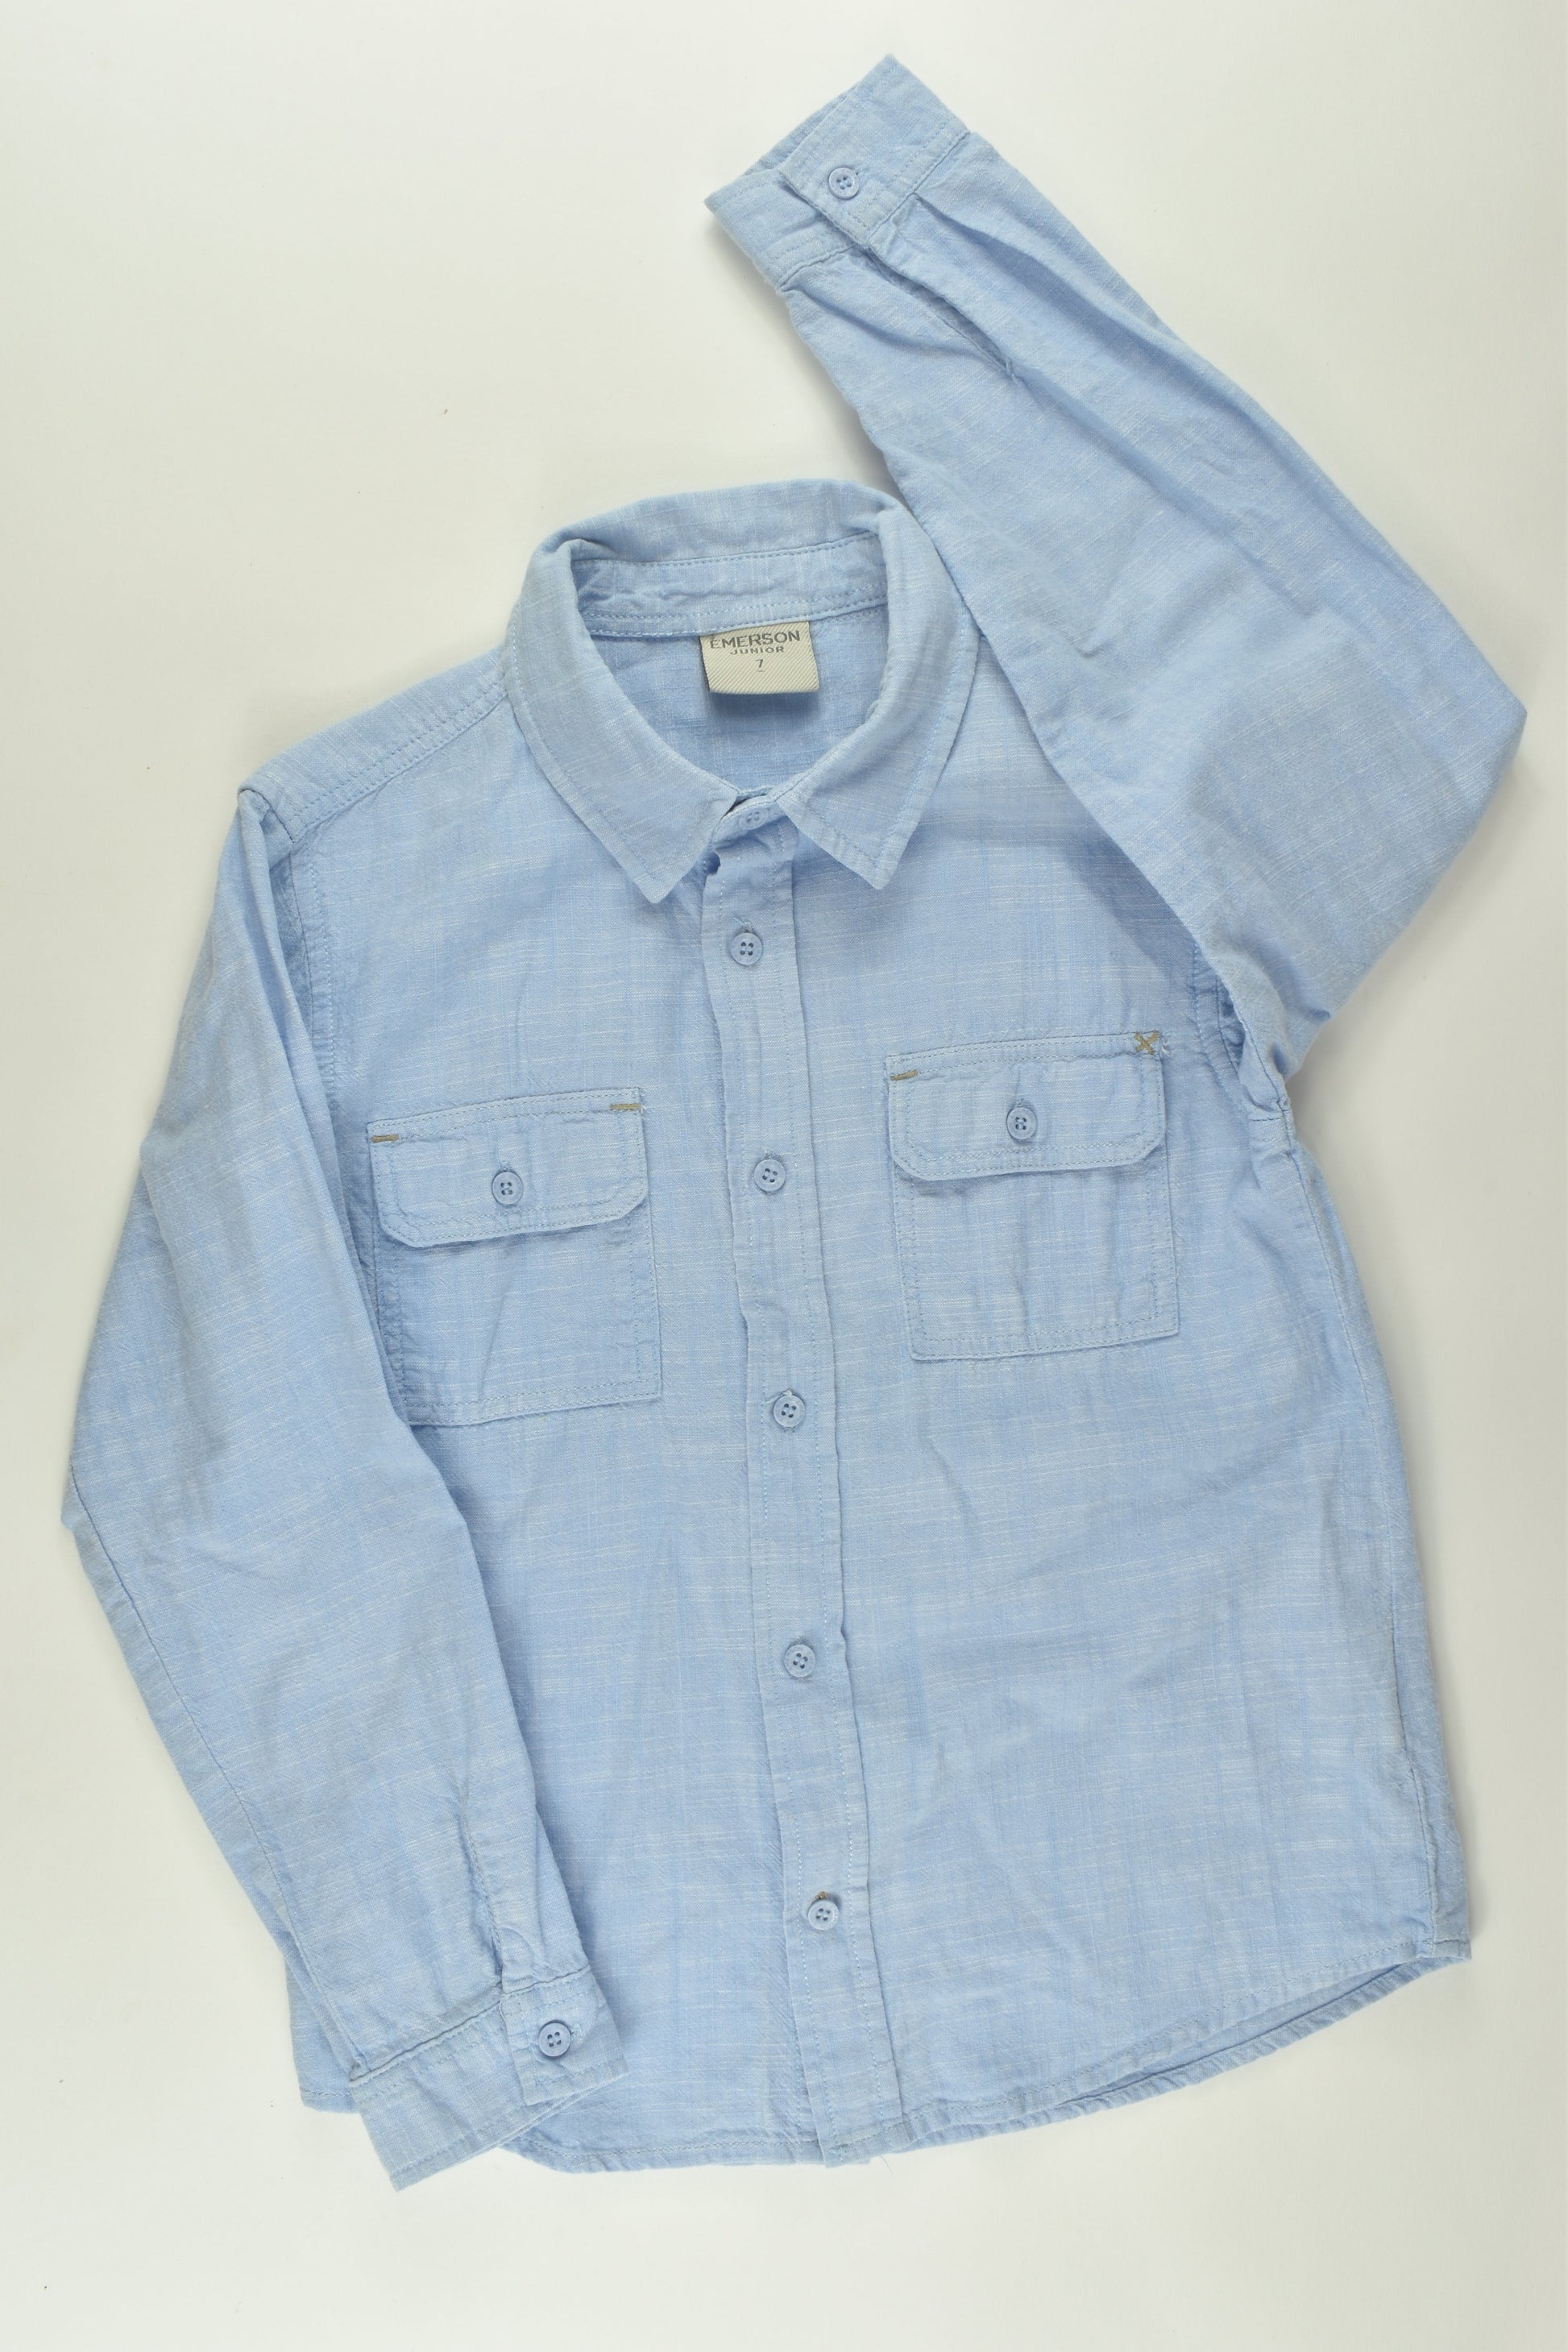 Emerson Junior Size 7 Linen-feel Button-up Shirt